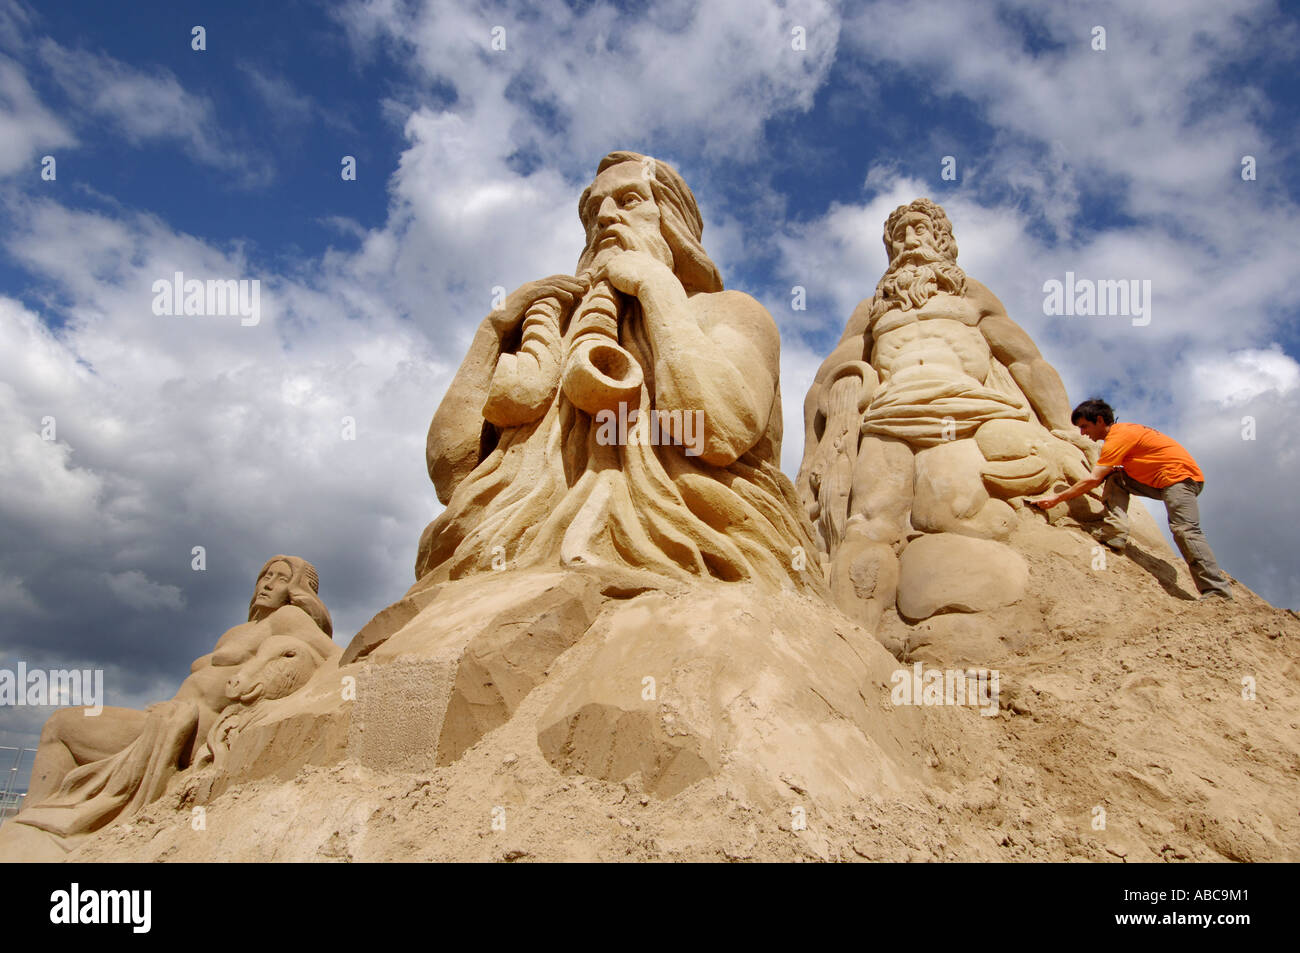 Un sculpteur de sable crée une figure dans le cadre d'un affichage basé sur l'Empire romain Banque D'Images